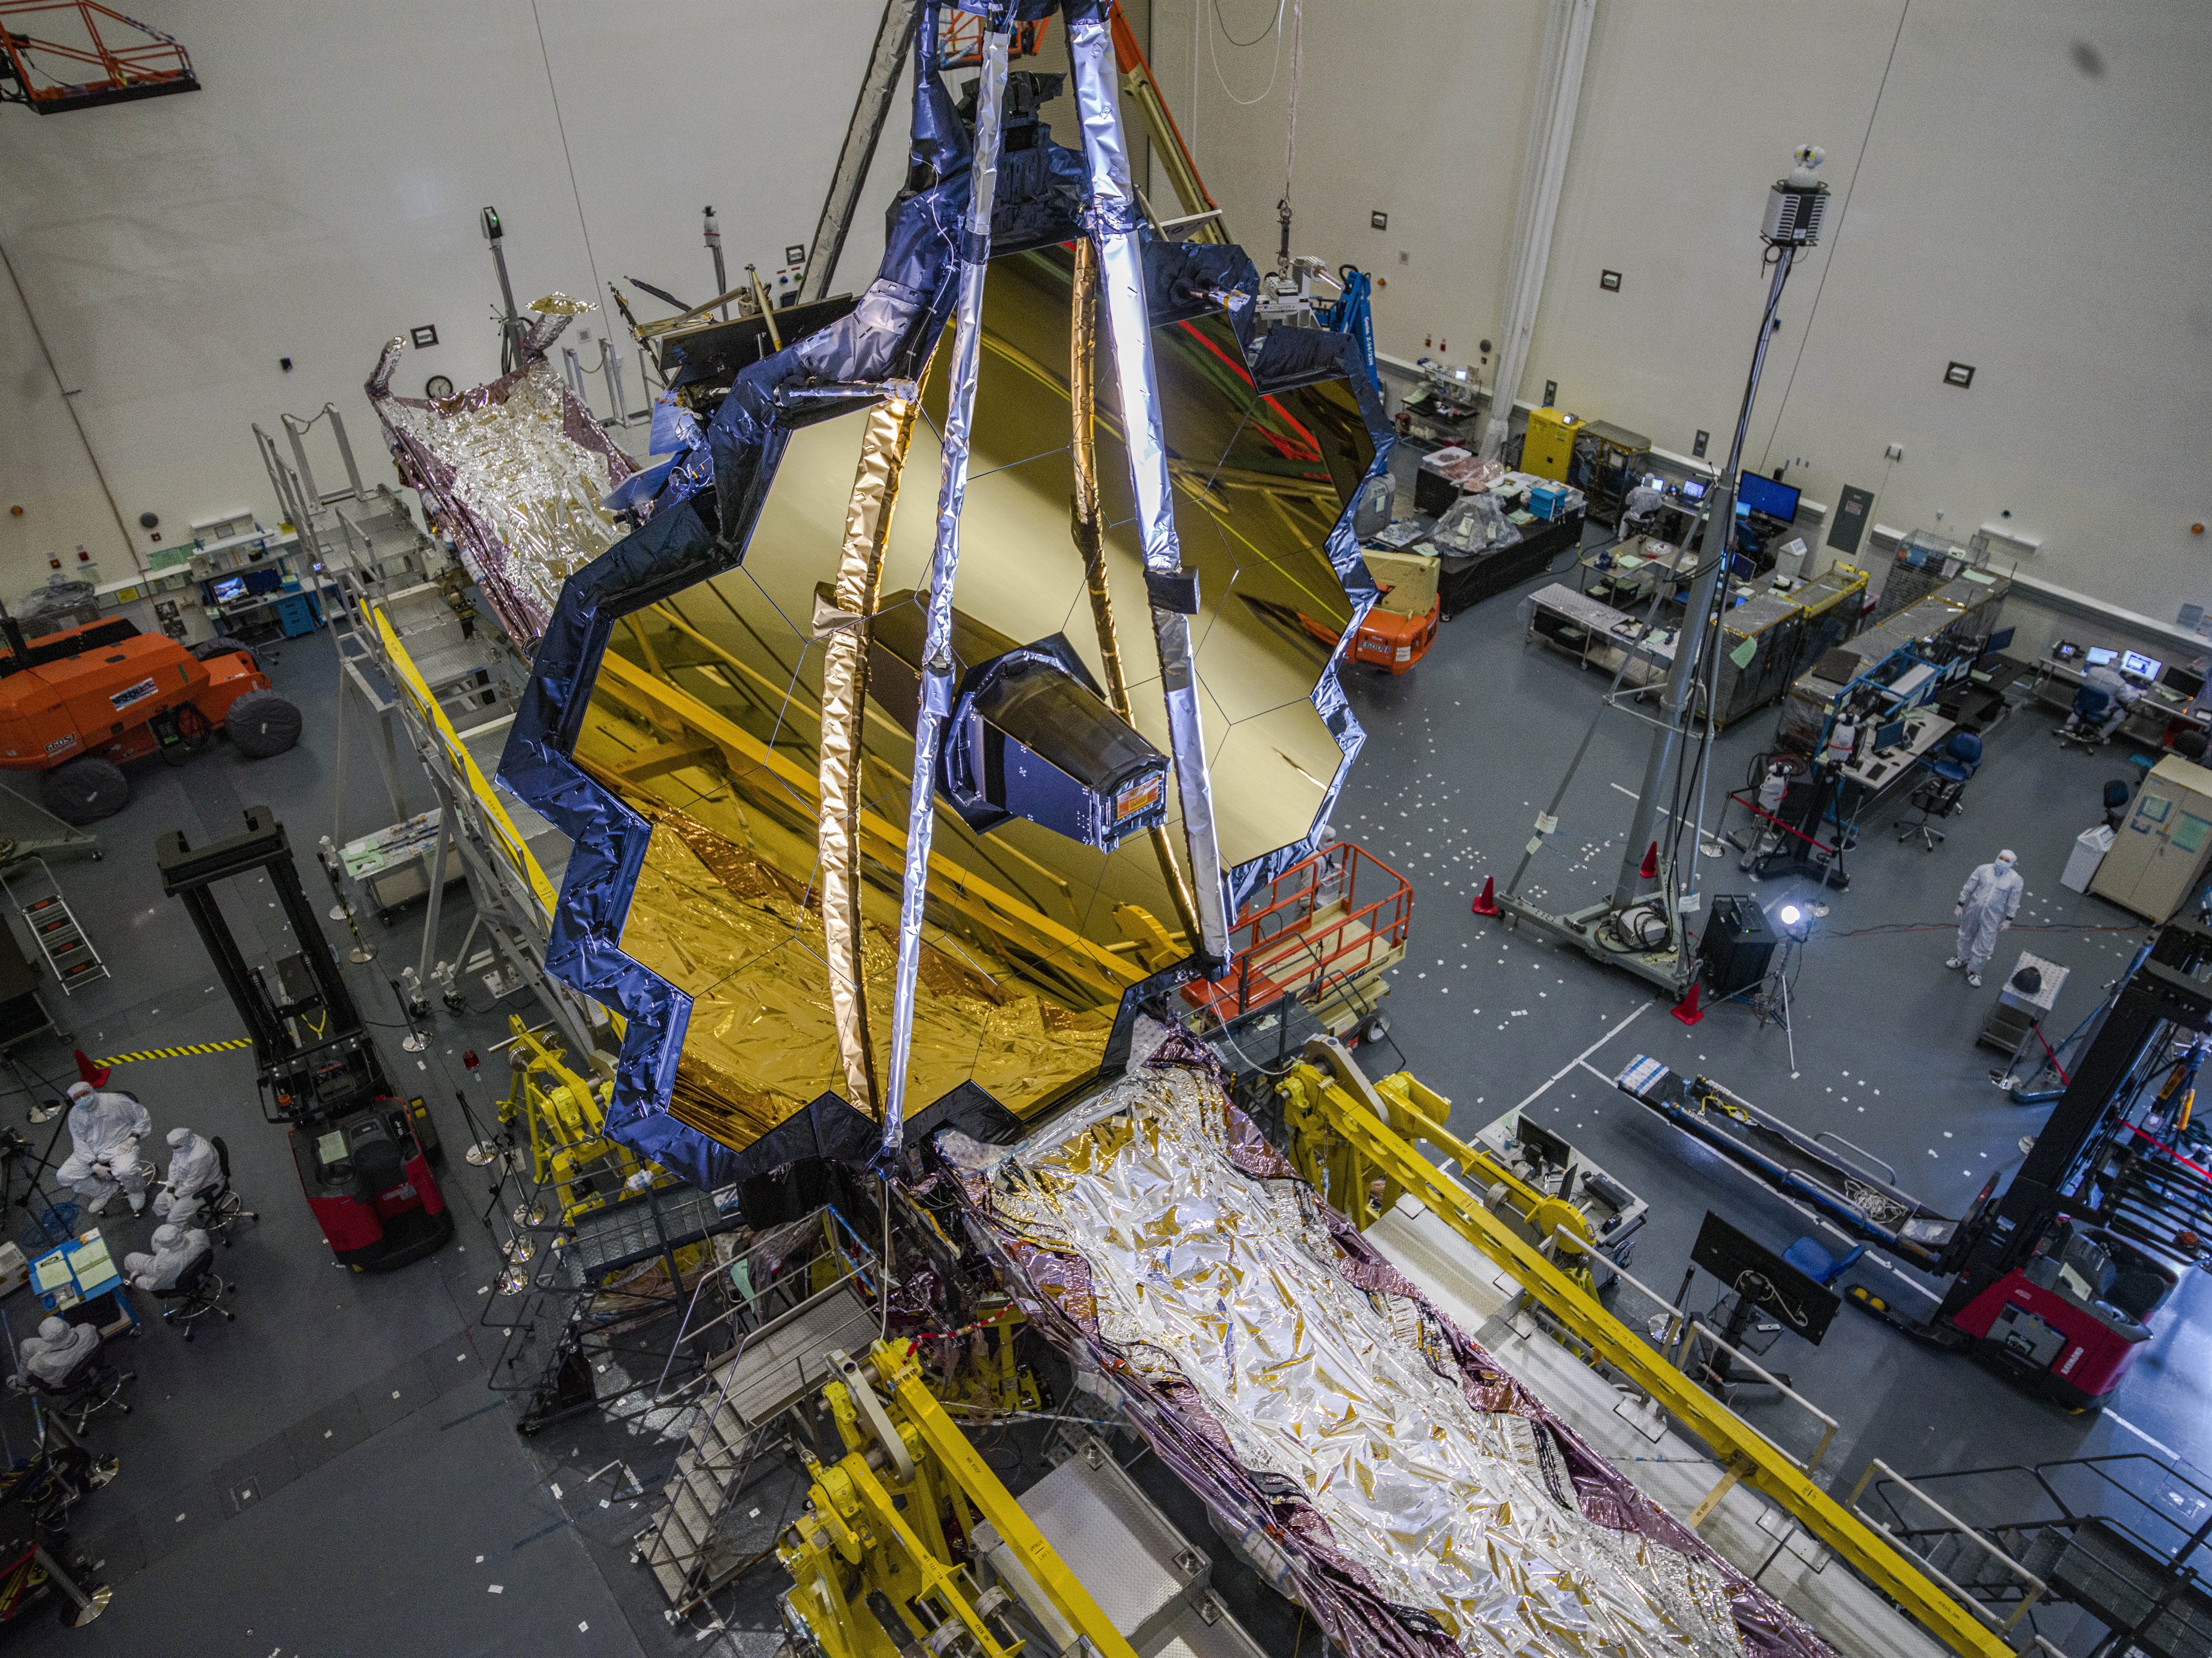 El telescopio espacial James Webb de la NASA en la sala limpia de Northrop Grumman, Redondo Beach, California, en julio de 2020.
(NASA/CHRIS GUNN)